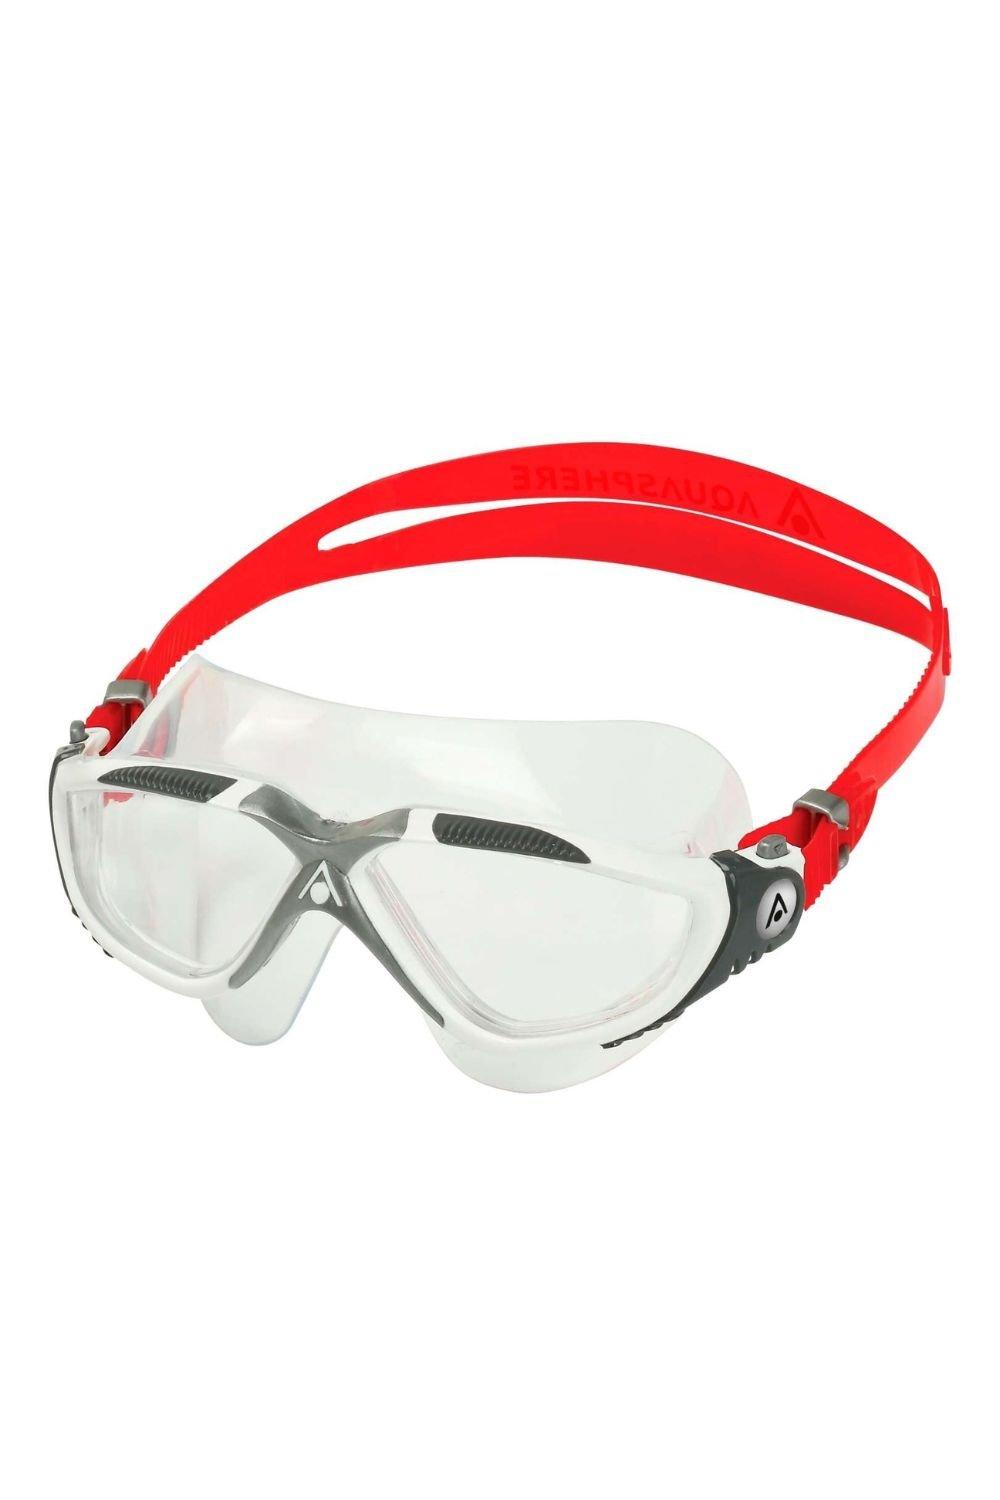 очки для плавания Vista Aquasphere, красный